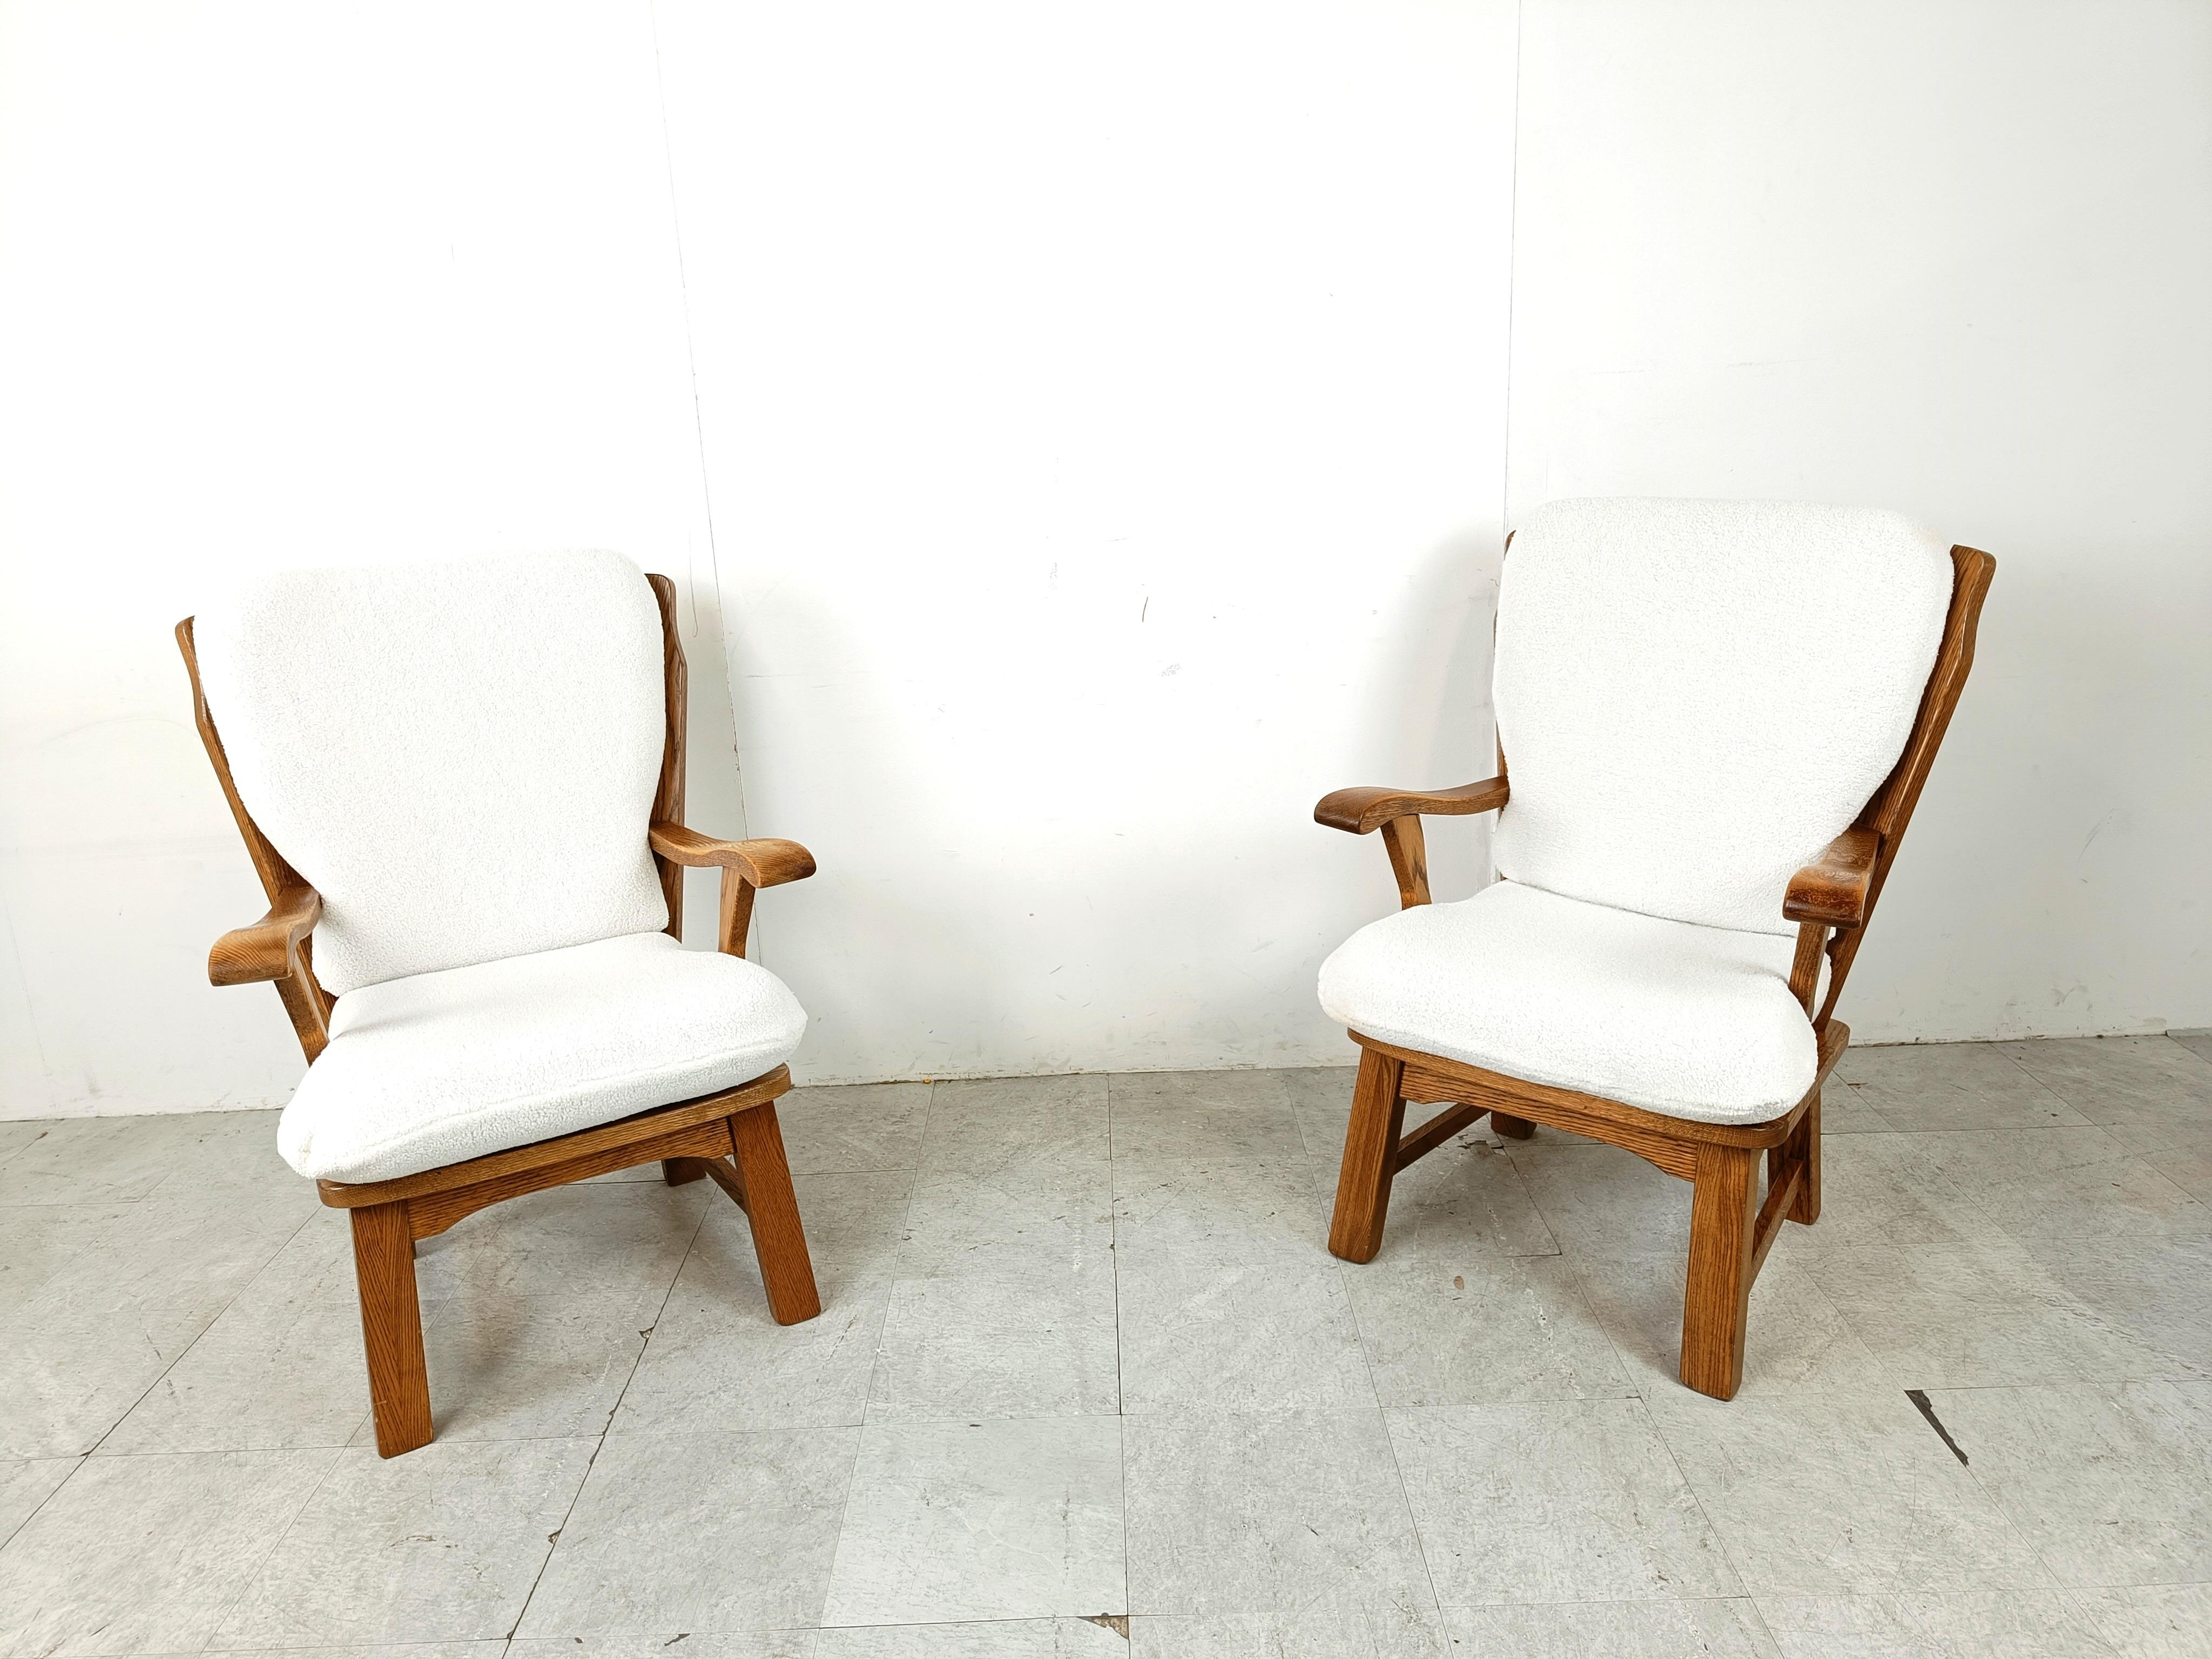 Ein Paar rustikale Sessel aus massiver Eiche mit bequemen, frisch gepolsterten Boucla-Kissen.

Diese elegant geformten Holzstühle verleihen Ihrer Einrichtung einen rustikalen Touch.

1950er Jahre - Frankreich

Sehr guter Zustand

Höhe: 100cm
Breite: